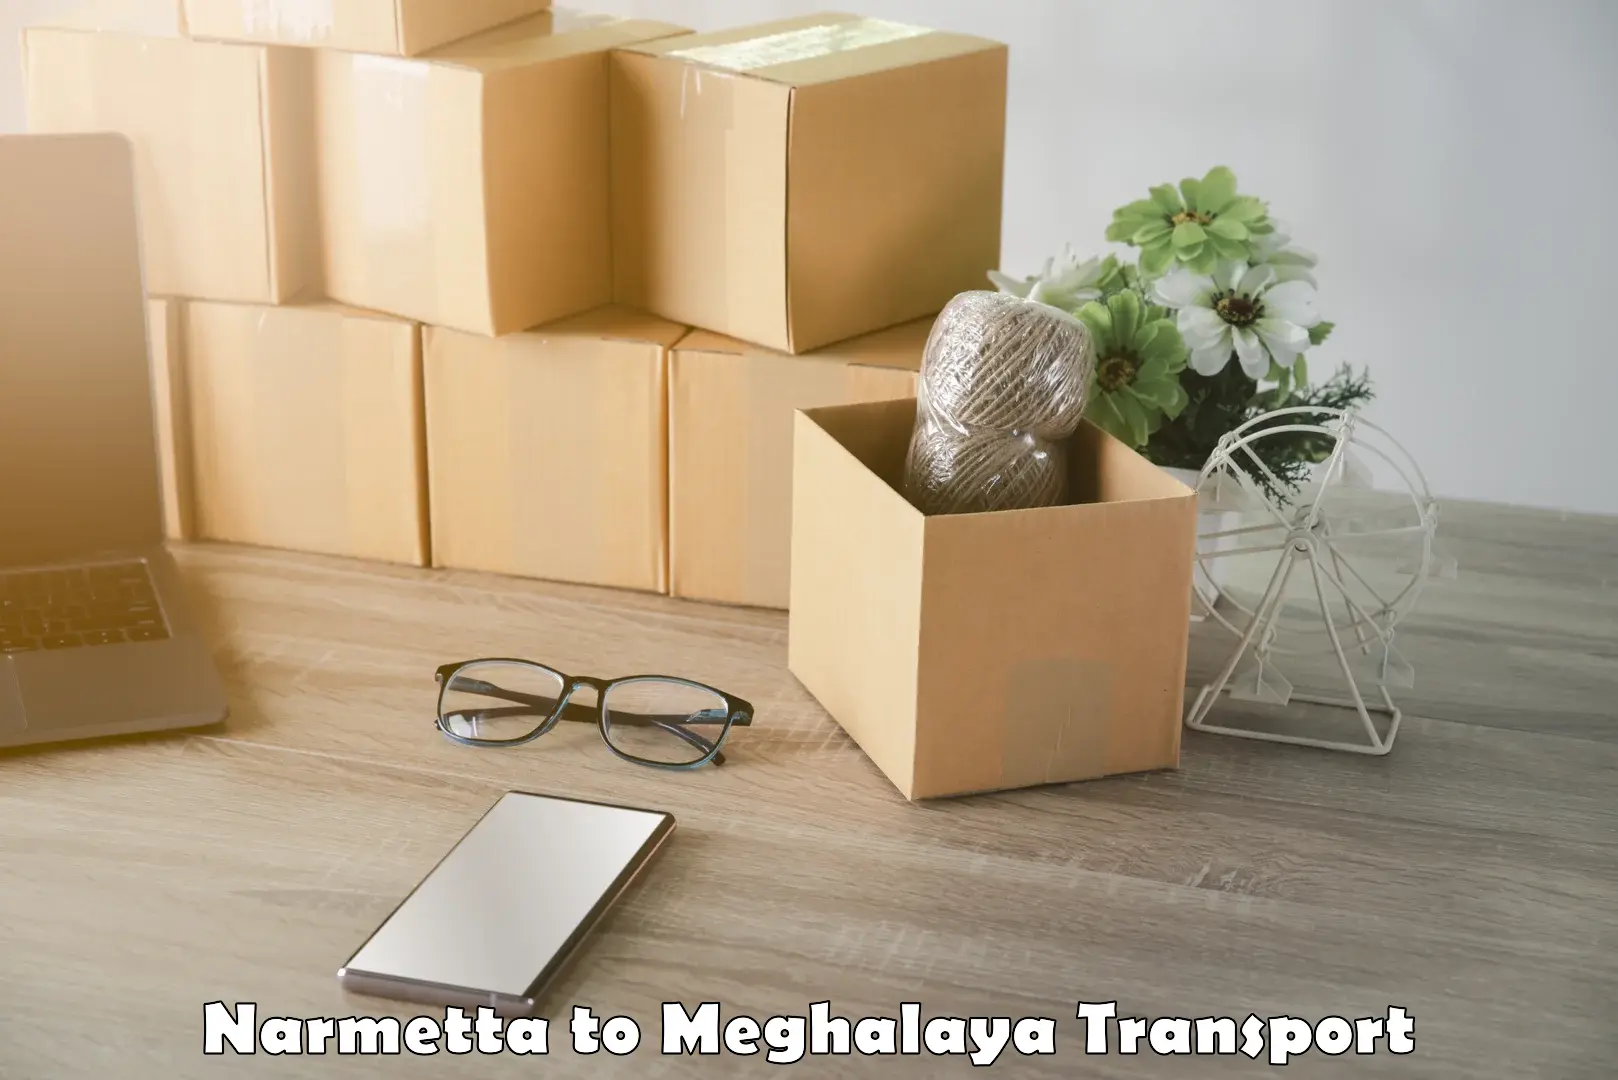 Furniture transport service Narmetta to Jowai